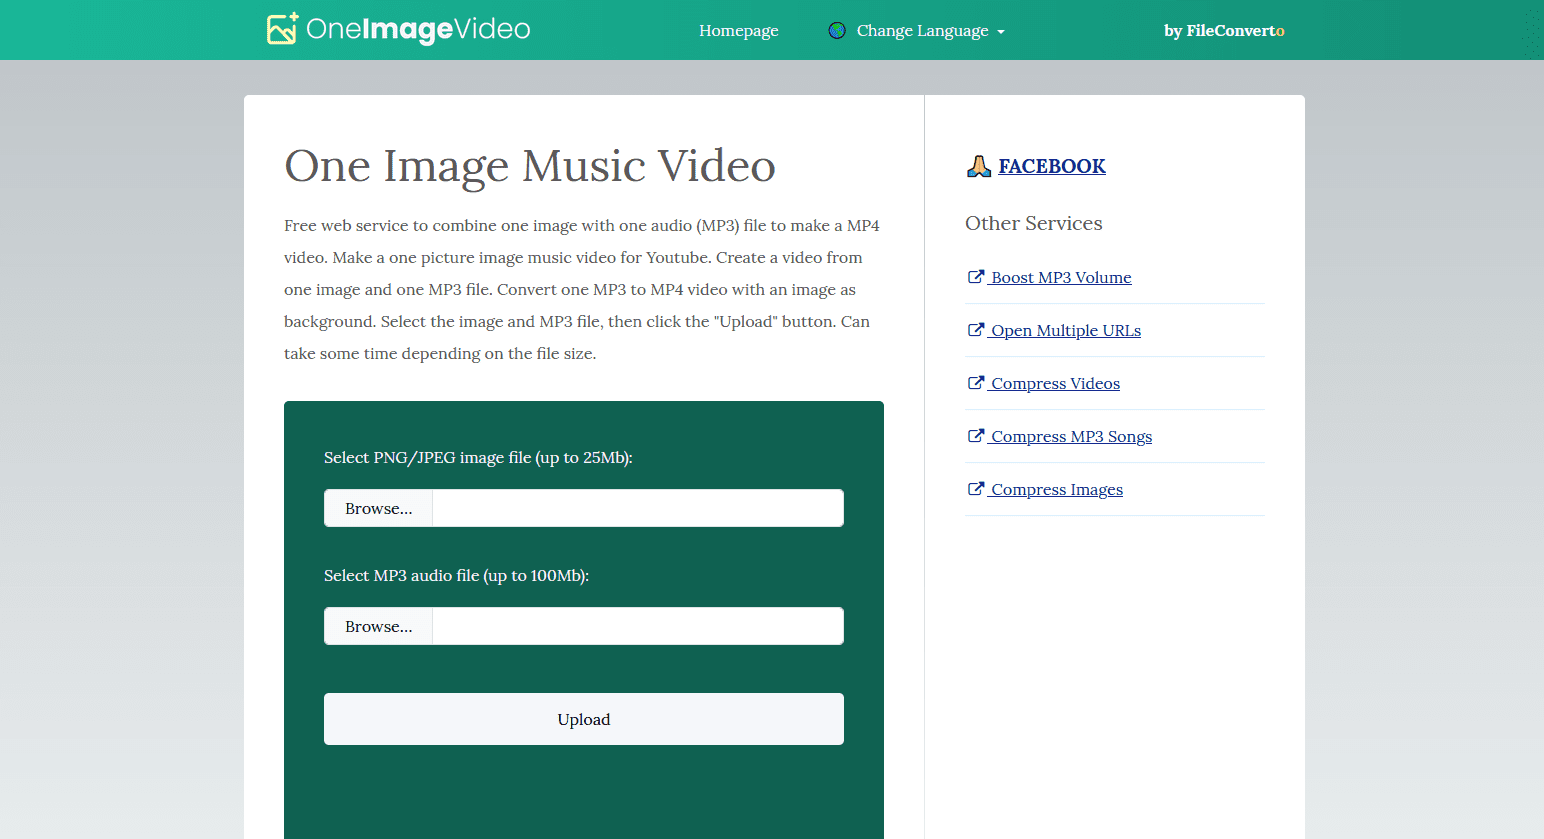 画像1枚の音楽ビデオを作成 - 1つの画像と1つのMP3をMP4ビデオへ結合